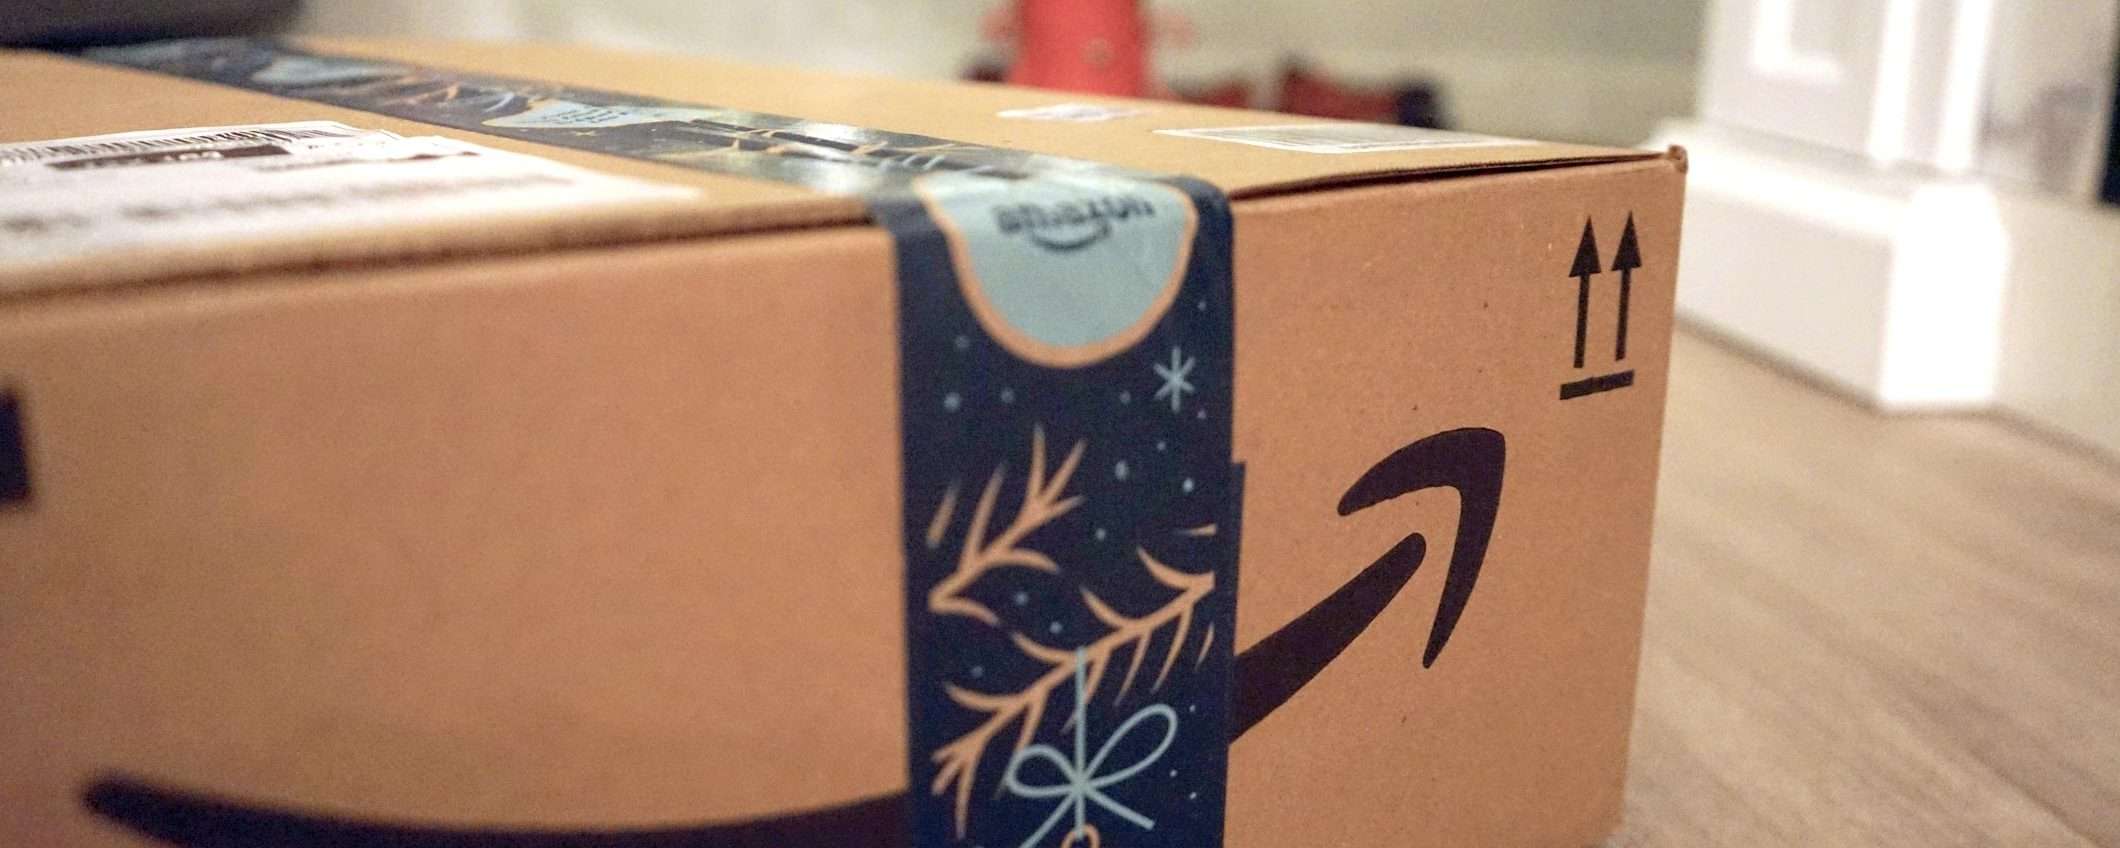 Amazon Prime in regalo: ecco come